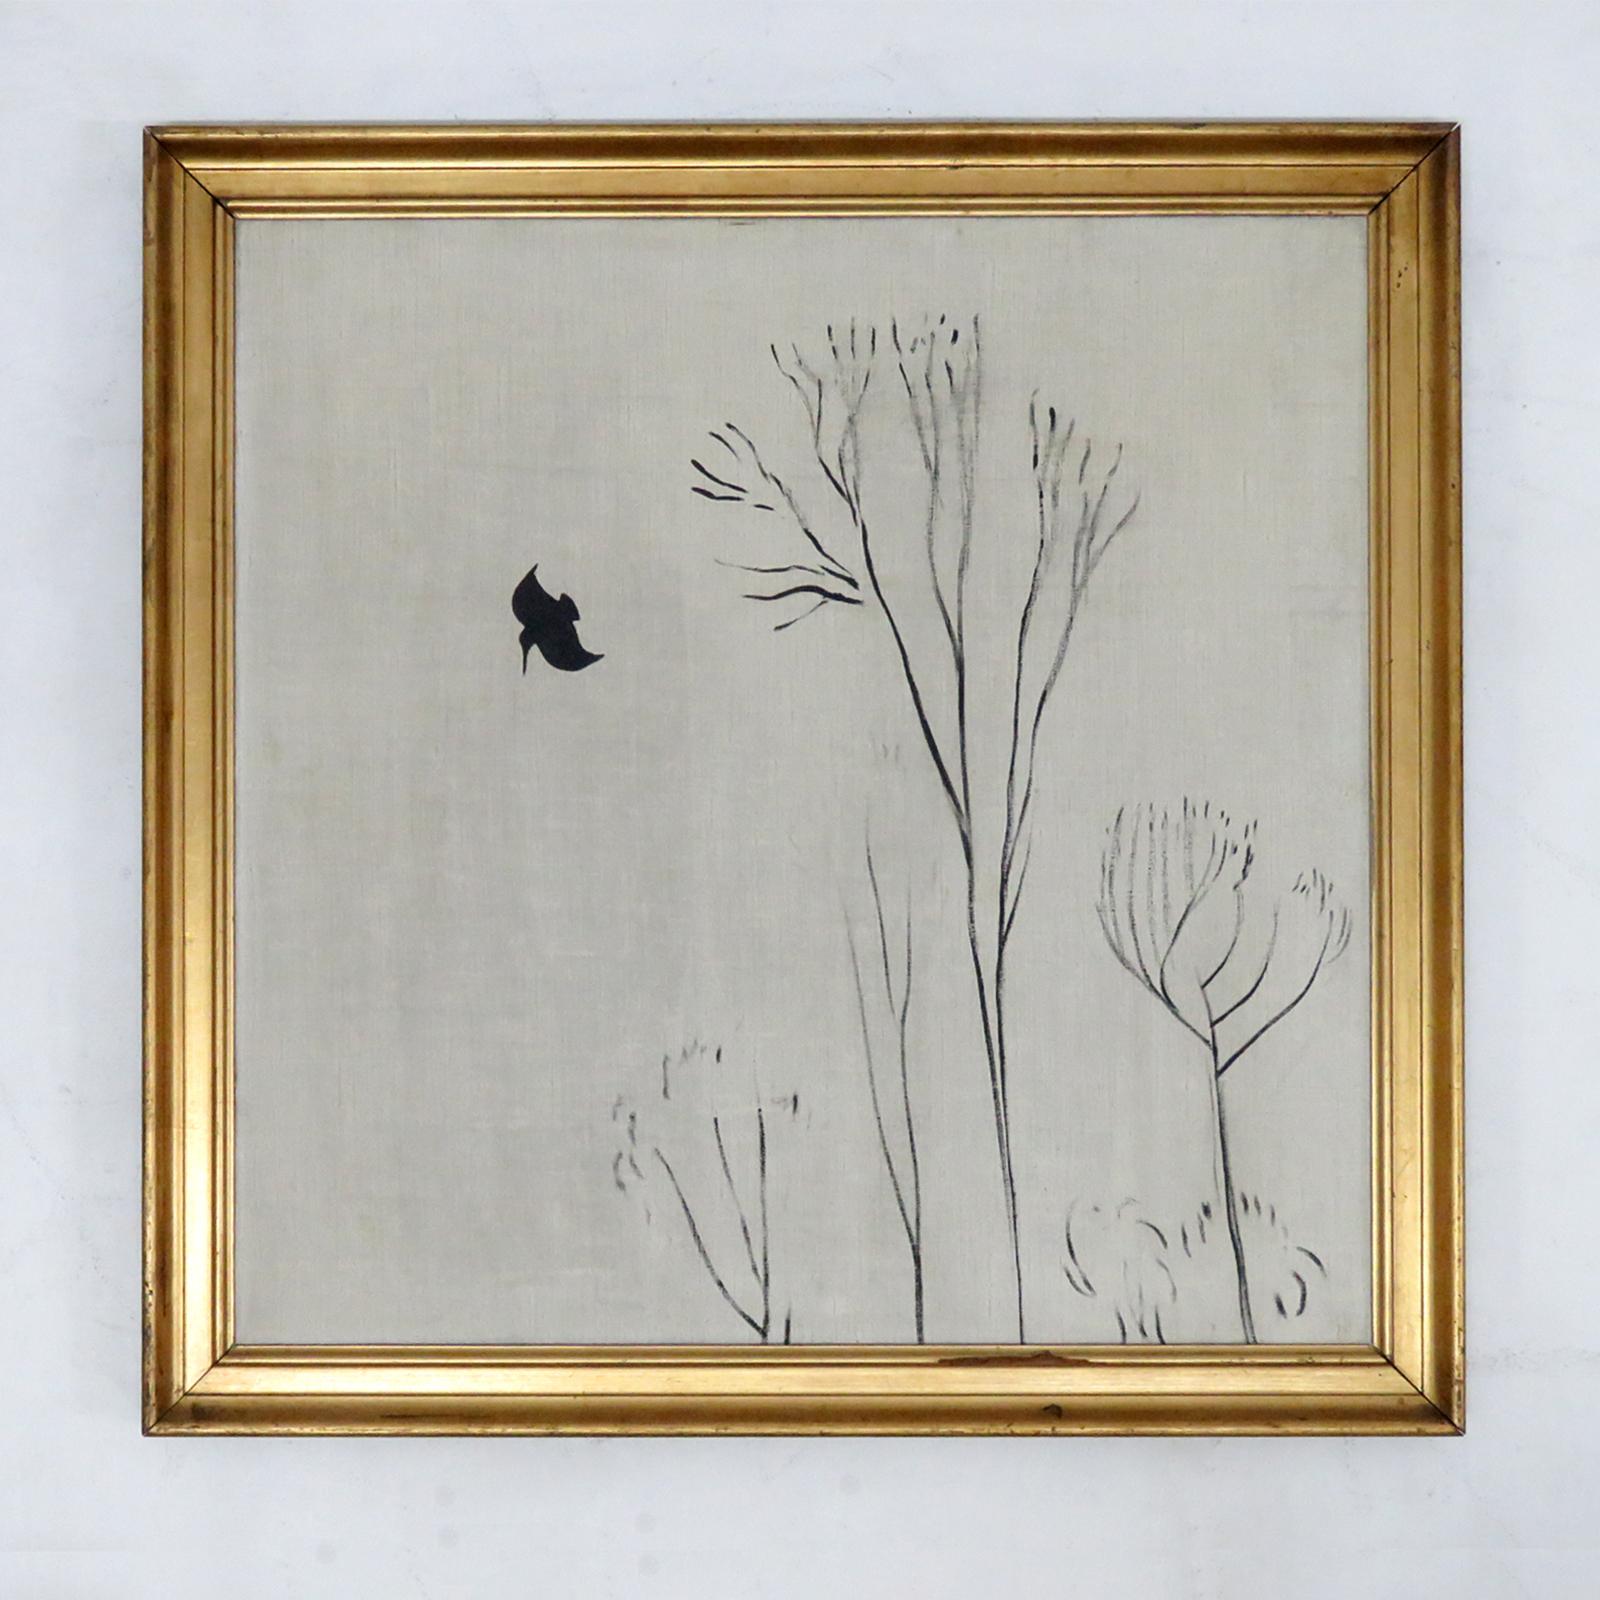 Magnifique peinture à l'huile sur toile du peintre danois Ernst Hansen (1892-1968), composition 'oiseaux/arbres dans le vent', encadrée, signée et datée 1924.